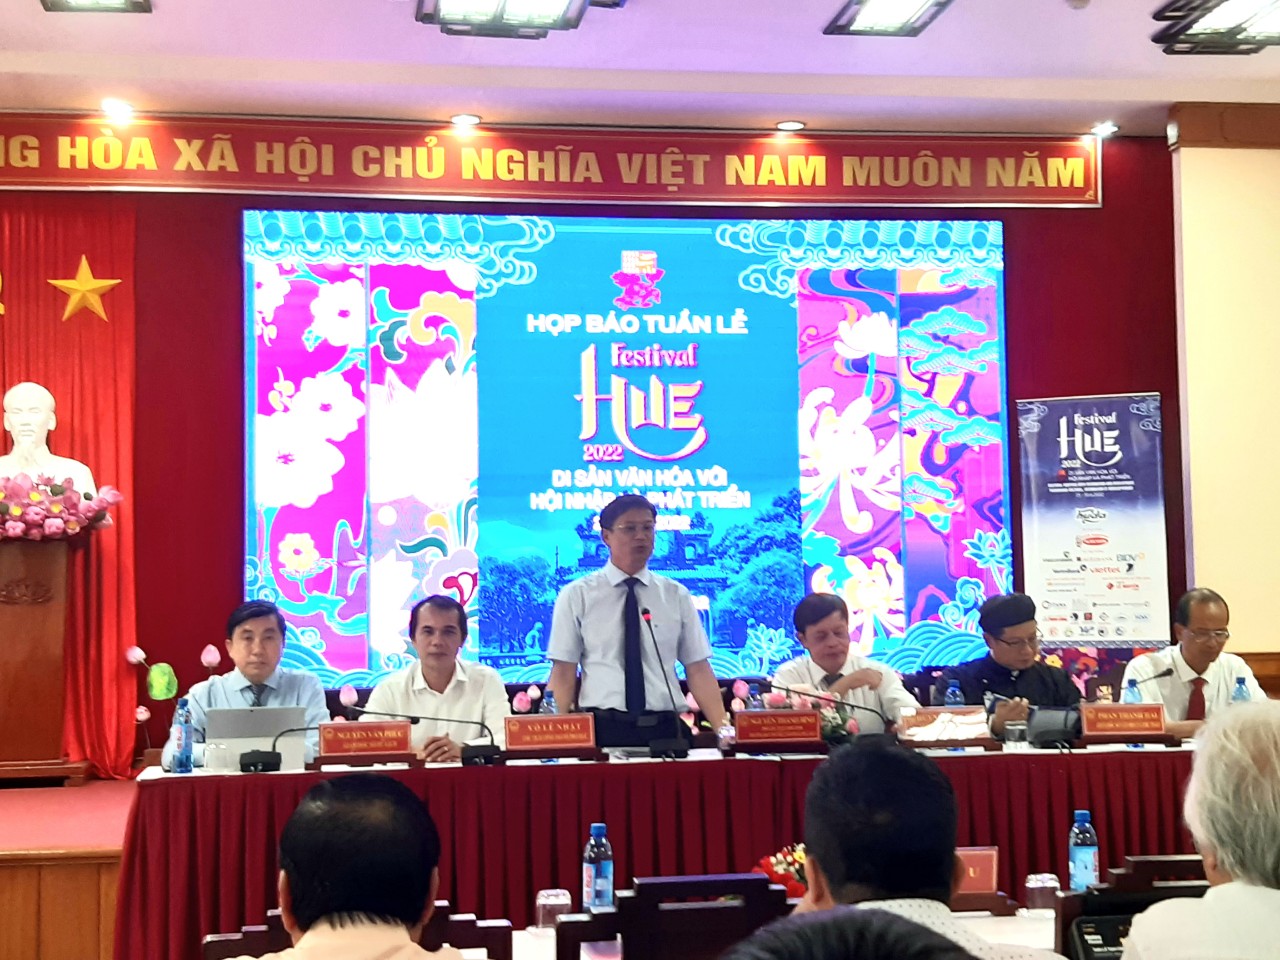 UBND tỉnh Thừa Thiên - Huế tổ chức họp báo giới thiệu Tuần lễ Festival Huế 2022.